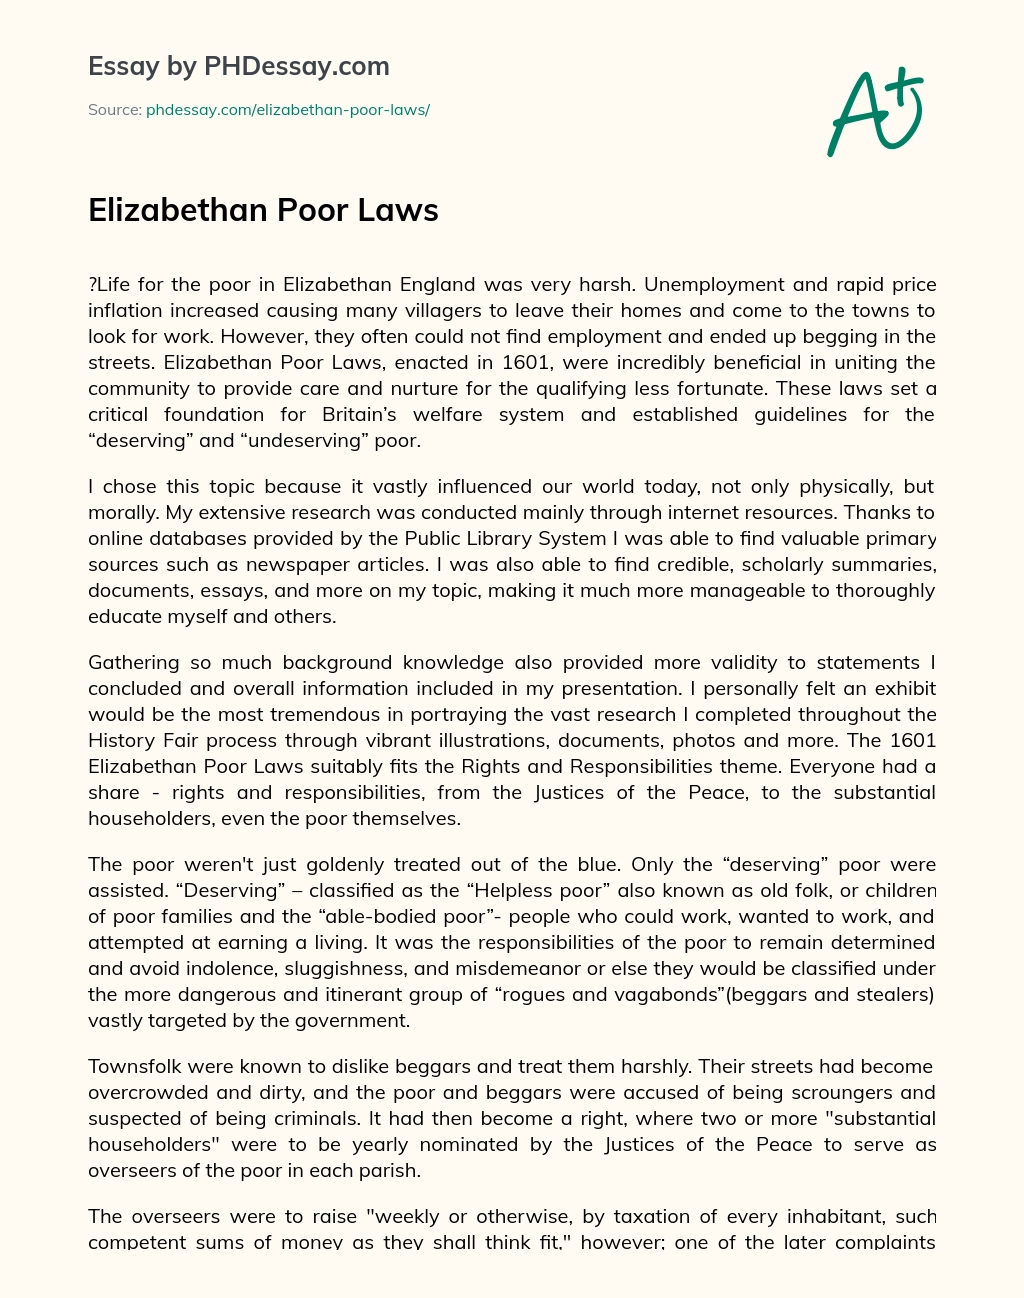 Elizabethan Poor Laws essay